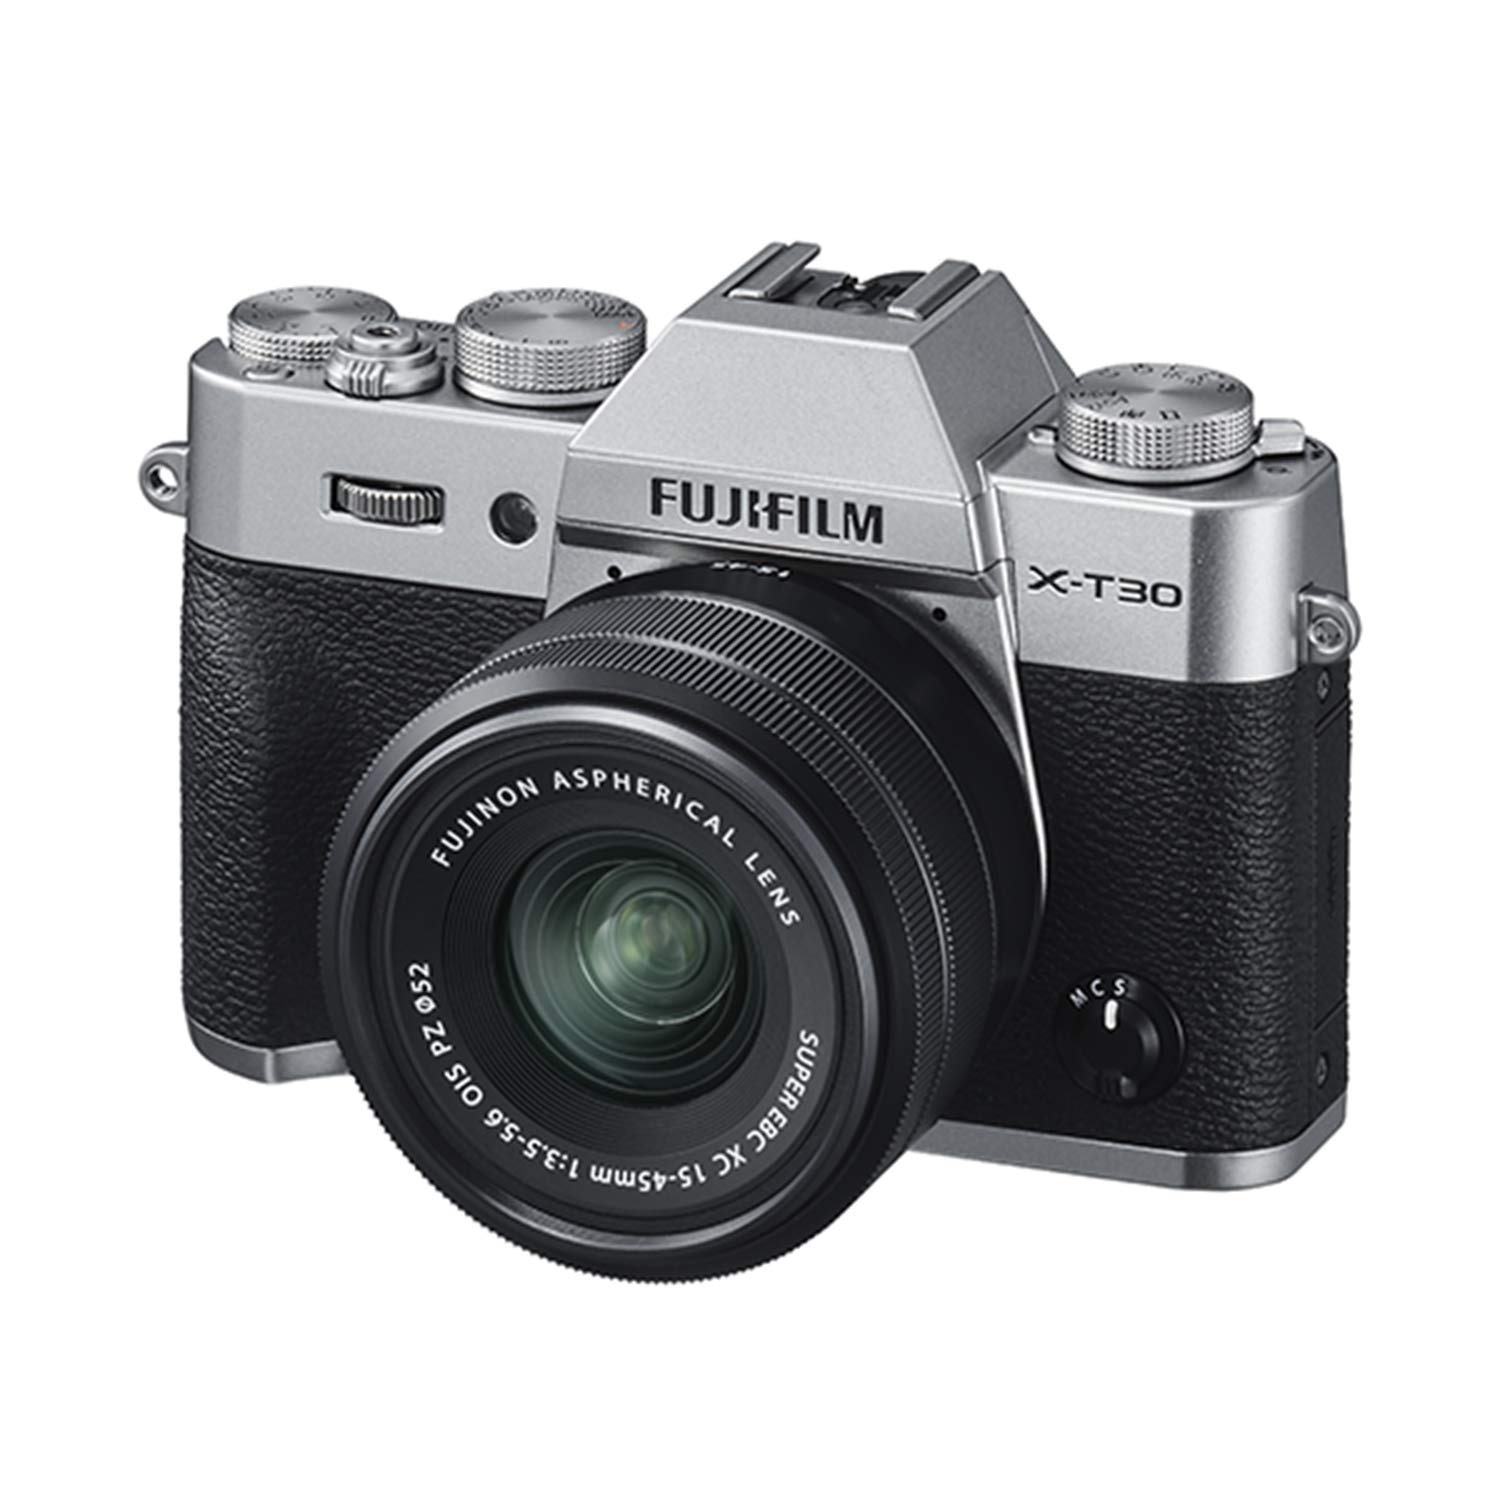 Fujifilm Aparat bezlusterkowy  X-T30 z obiektywem XC 15-45mm f/3.5-5.6 OIS PZ - srebrny